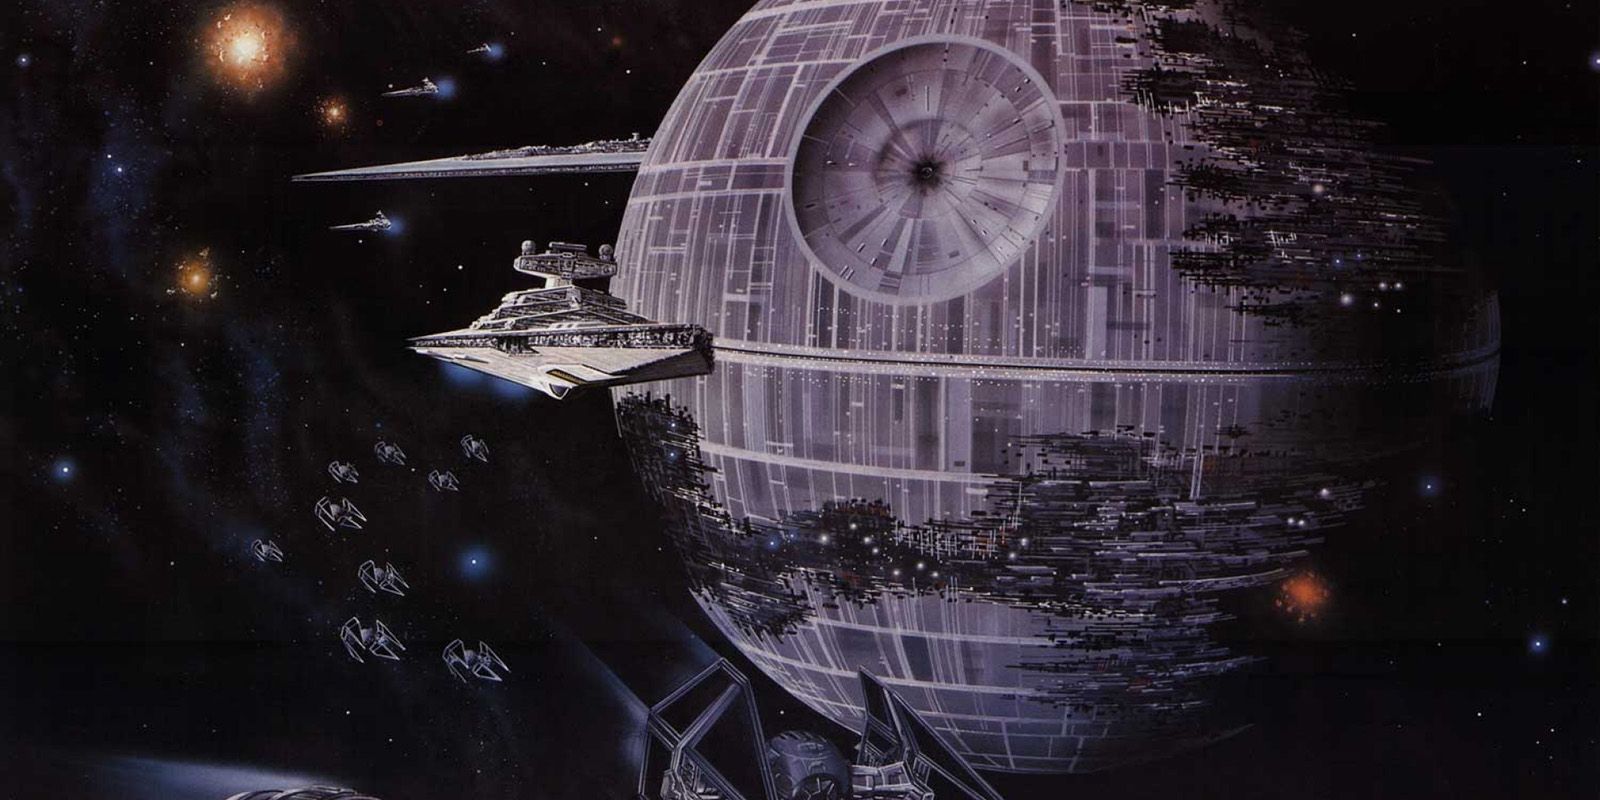 Star Wars: Return of the Jedi Death Star Art